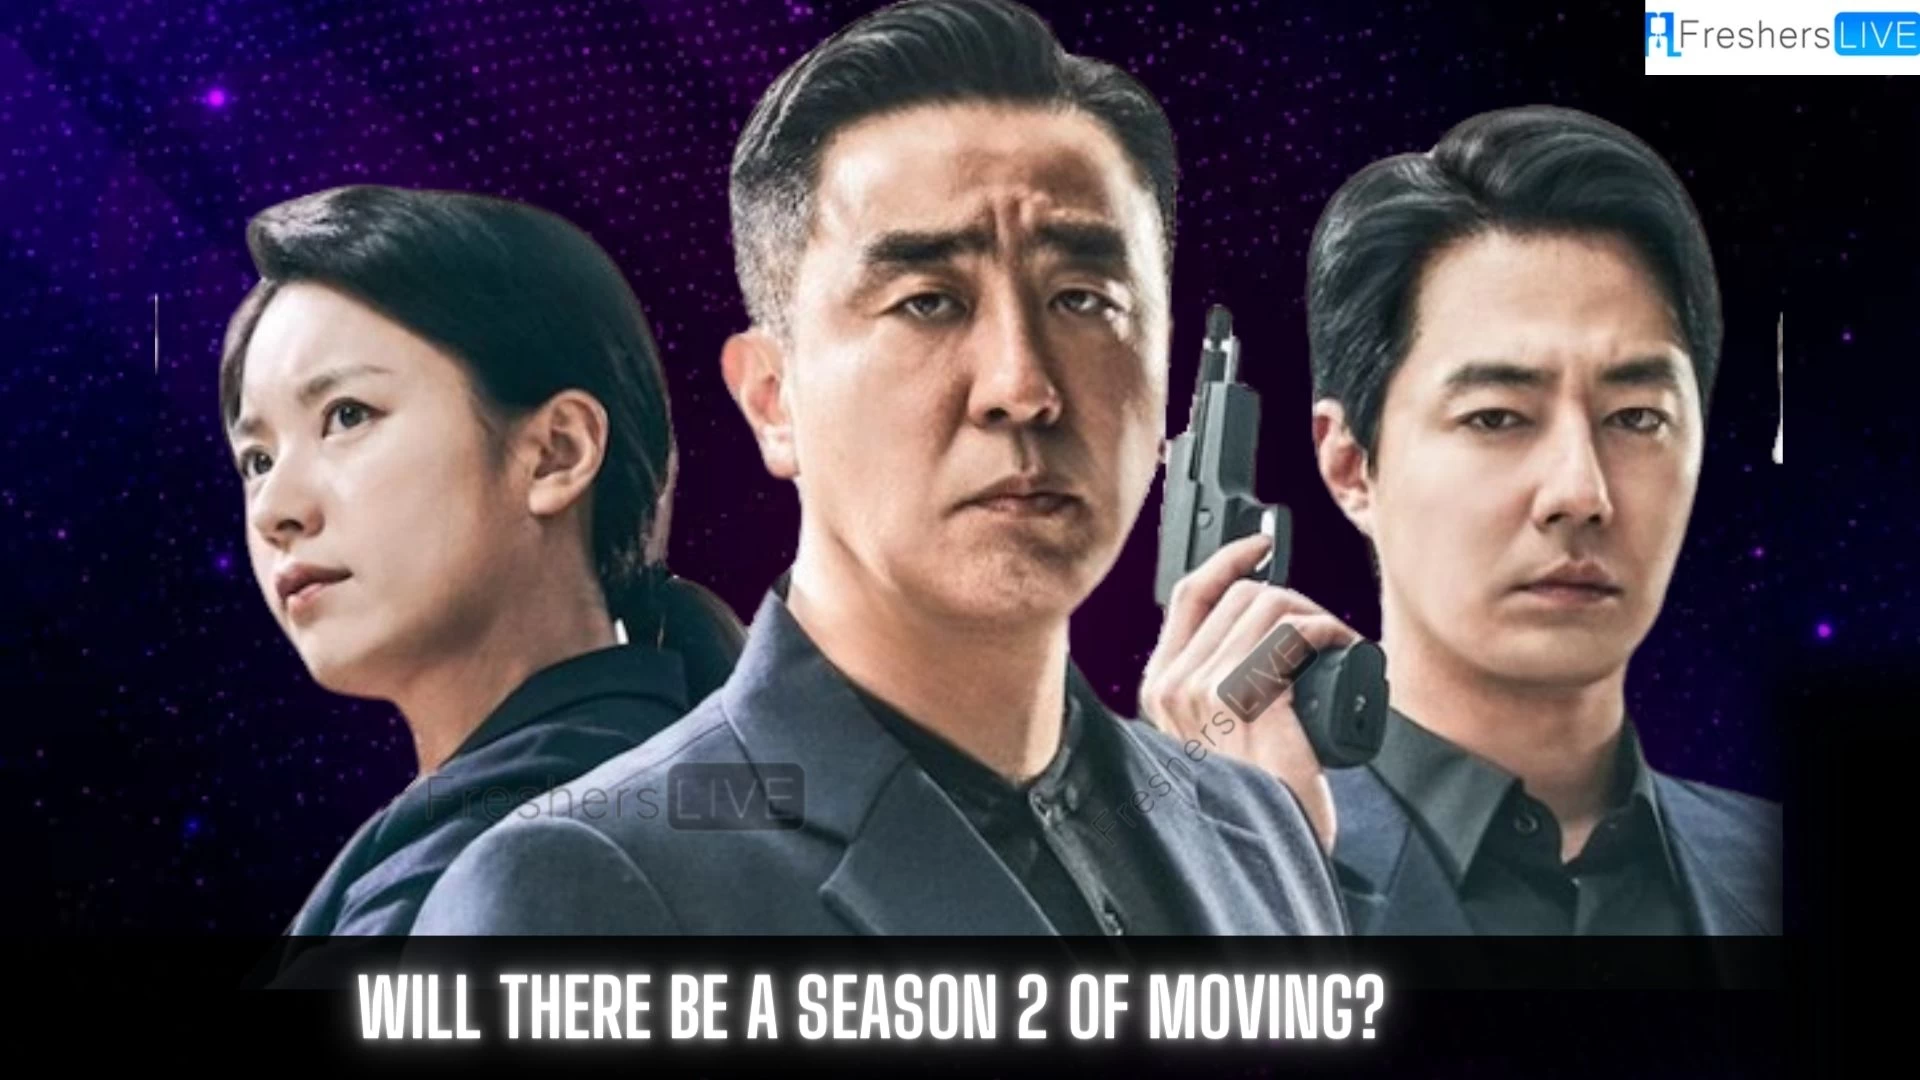 ¿Habrá una temporada 2 de Movimiento?  Temporada de mudanza 2: ¿Se renueva o se cancela el K-drama?